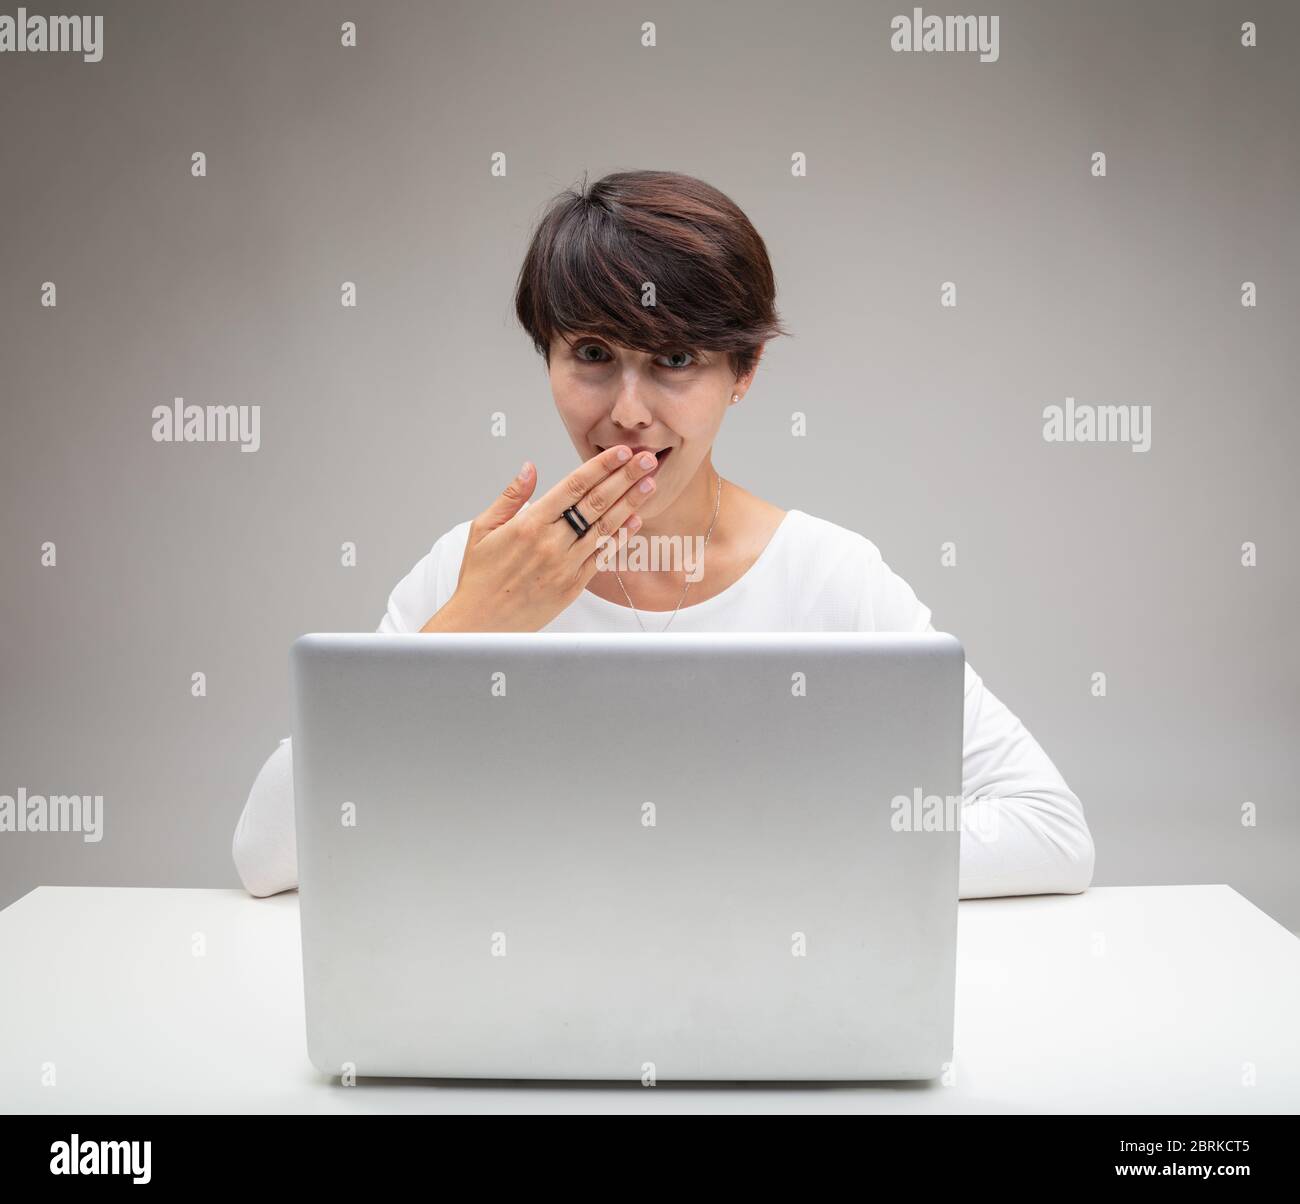 Taktvolle Frau, die ihren Mund bedeckt, während sie sich amüsiert hinter einem Laptop vor einem grauen Hintergrund sitzt Stockfoto